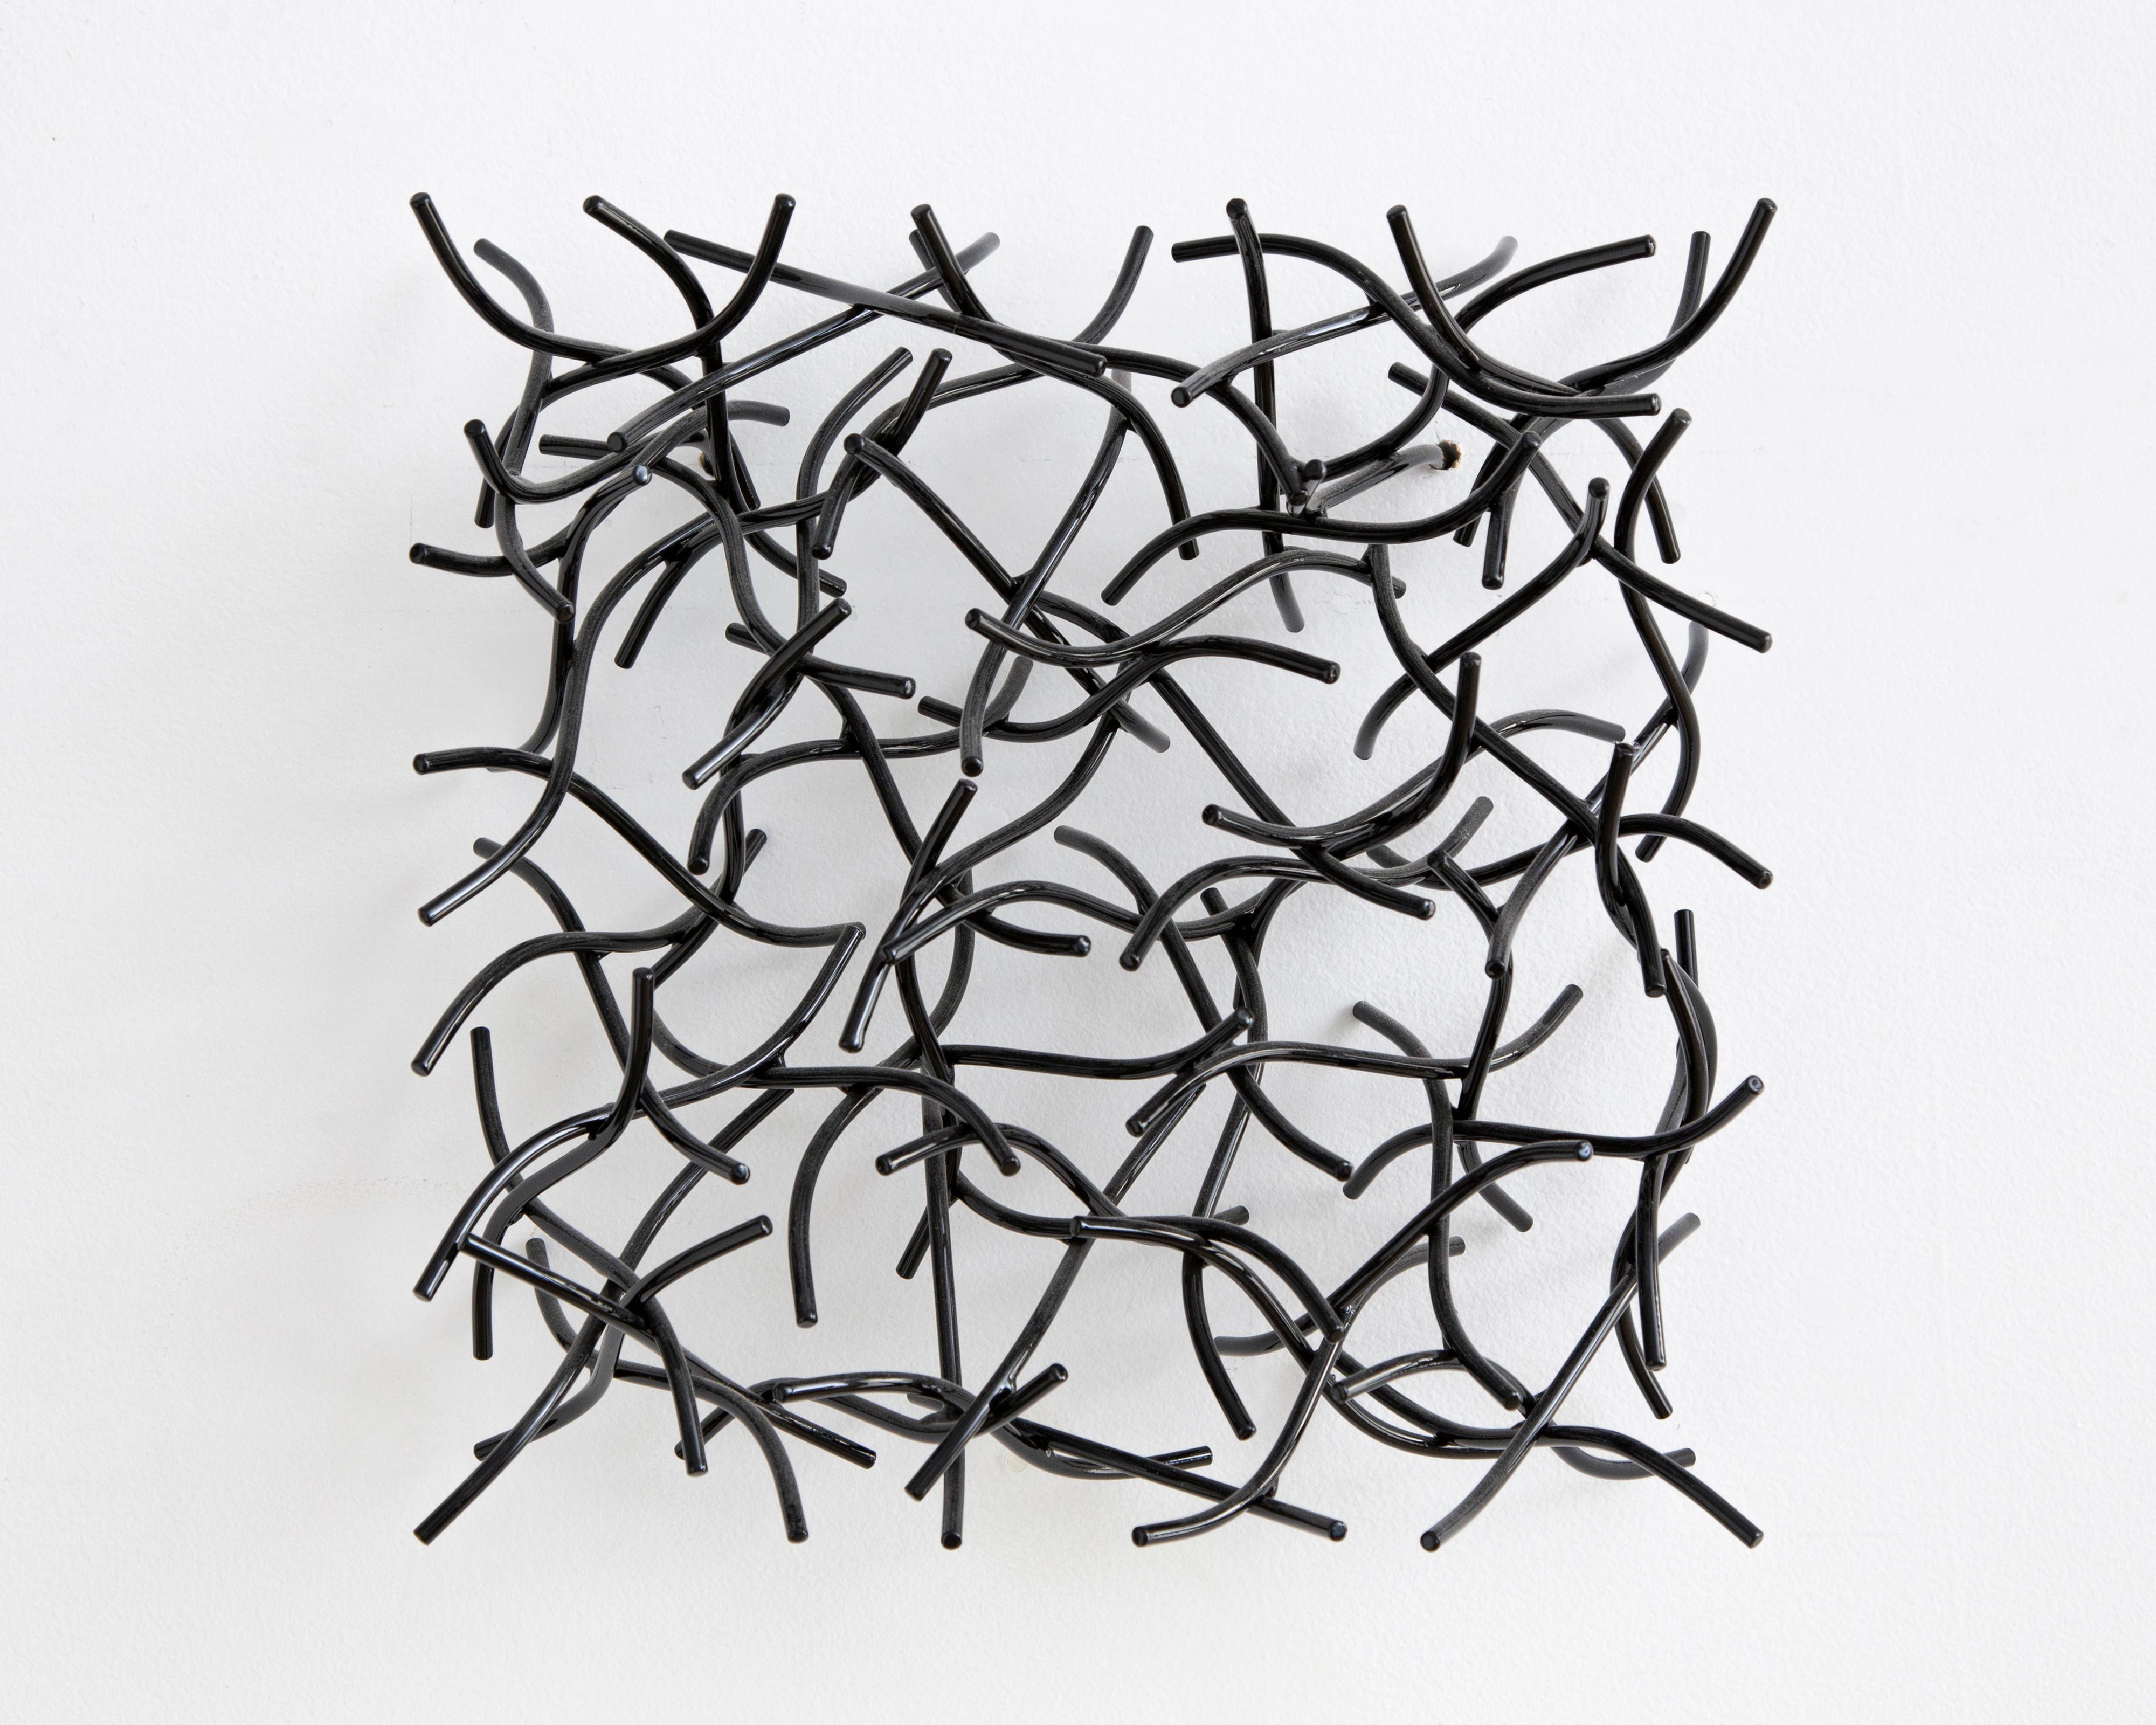 Matt Devine Abstract Sculpture - Wall Cube 14-8